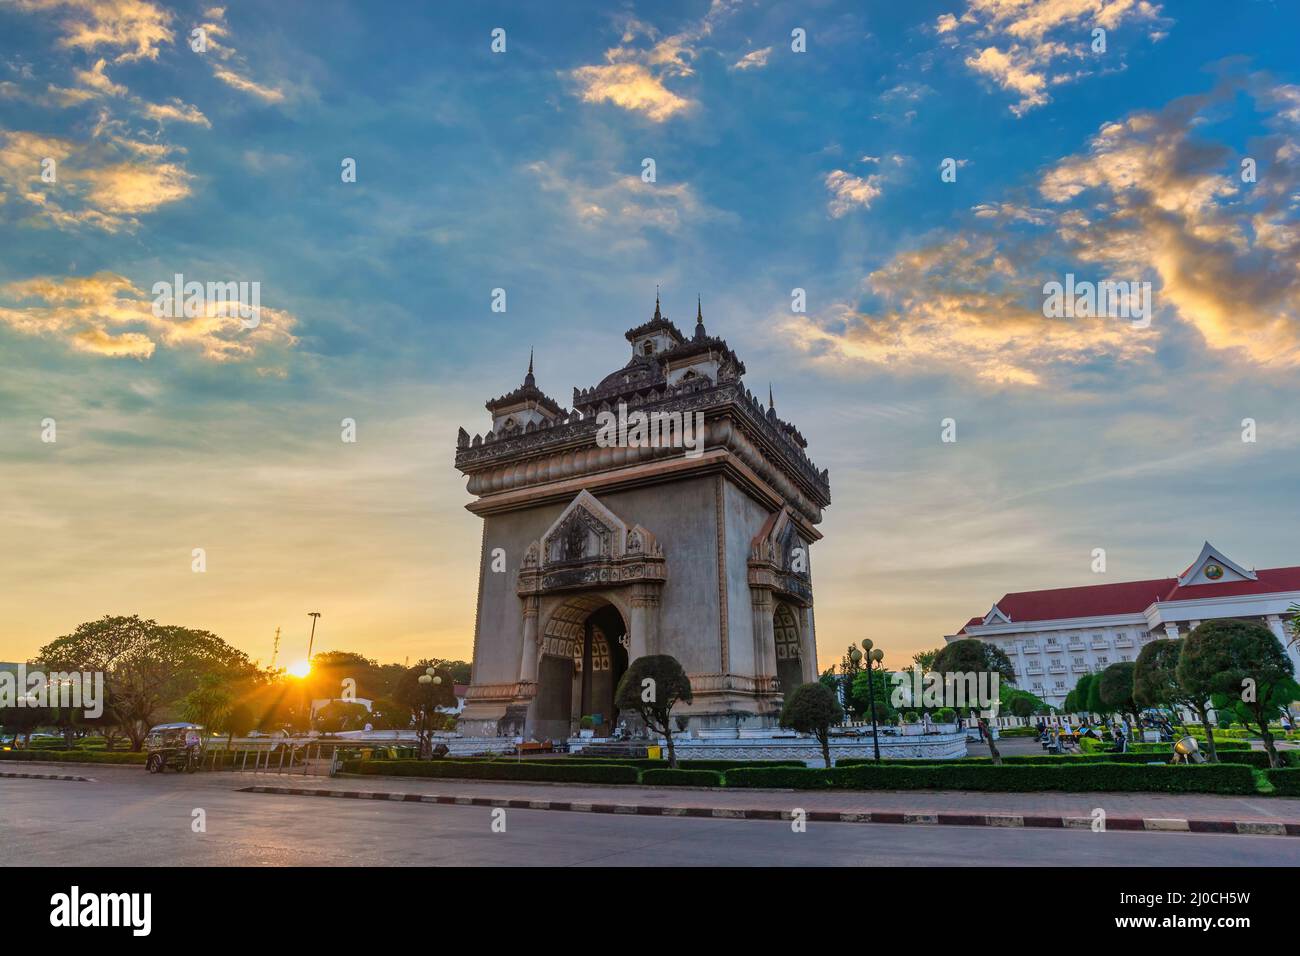 Vientiane Laos, sunset city skyline at Patuxai (Patuxay) the most famous landmark in Vientiane Stock Photo